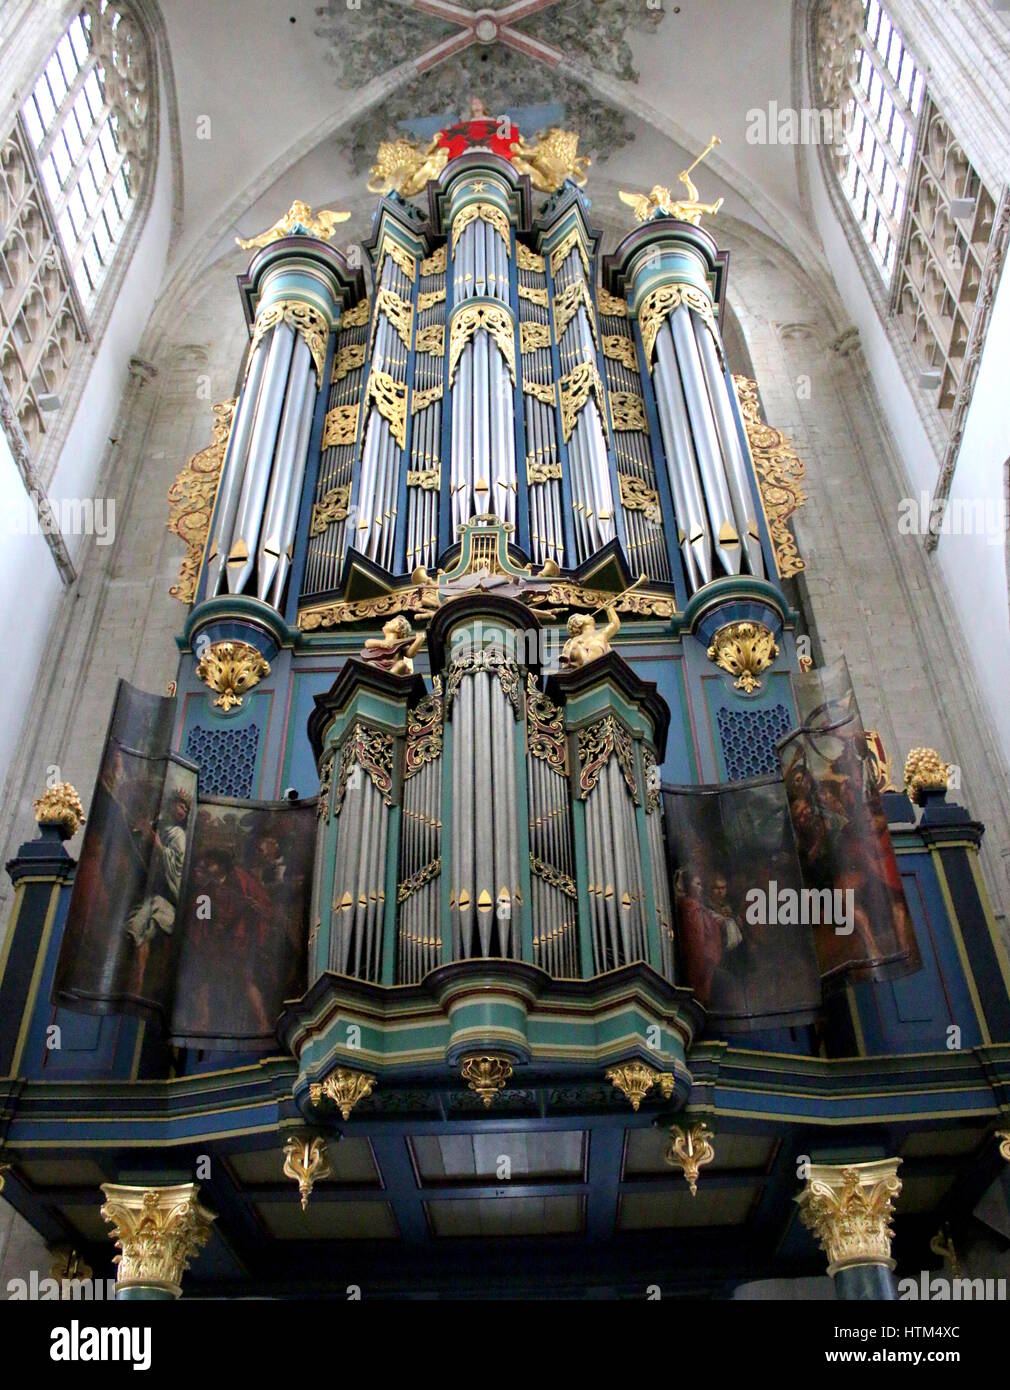 Orgue Flentrop monumentale dans l'église de Notre Dame (Onze-Lieve-Vrouwekerk), une ancienne cathédrale dans la ville de Breda, North Brabant, Pays-Bas Banque D'Images